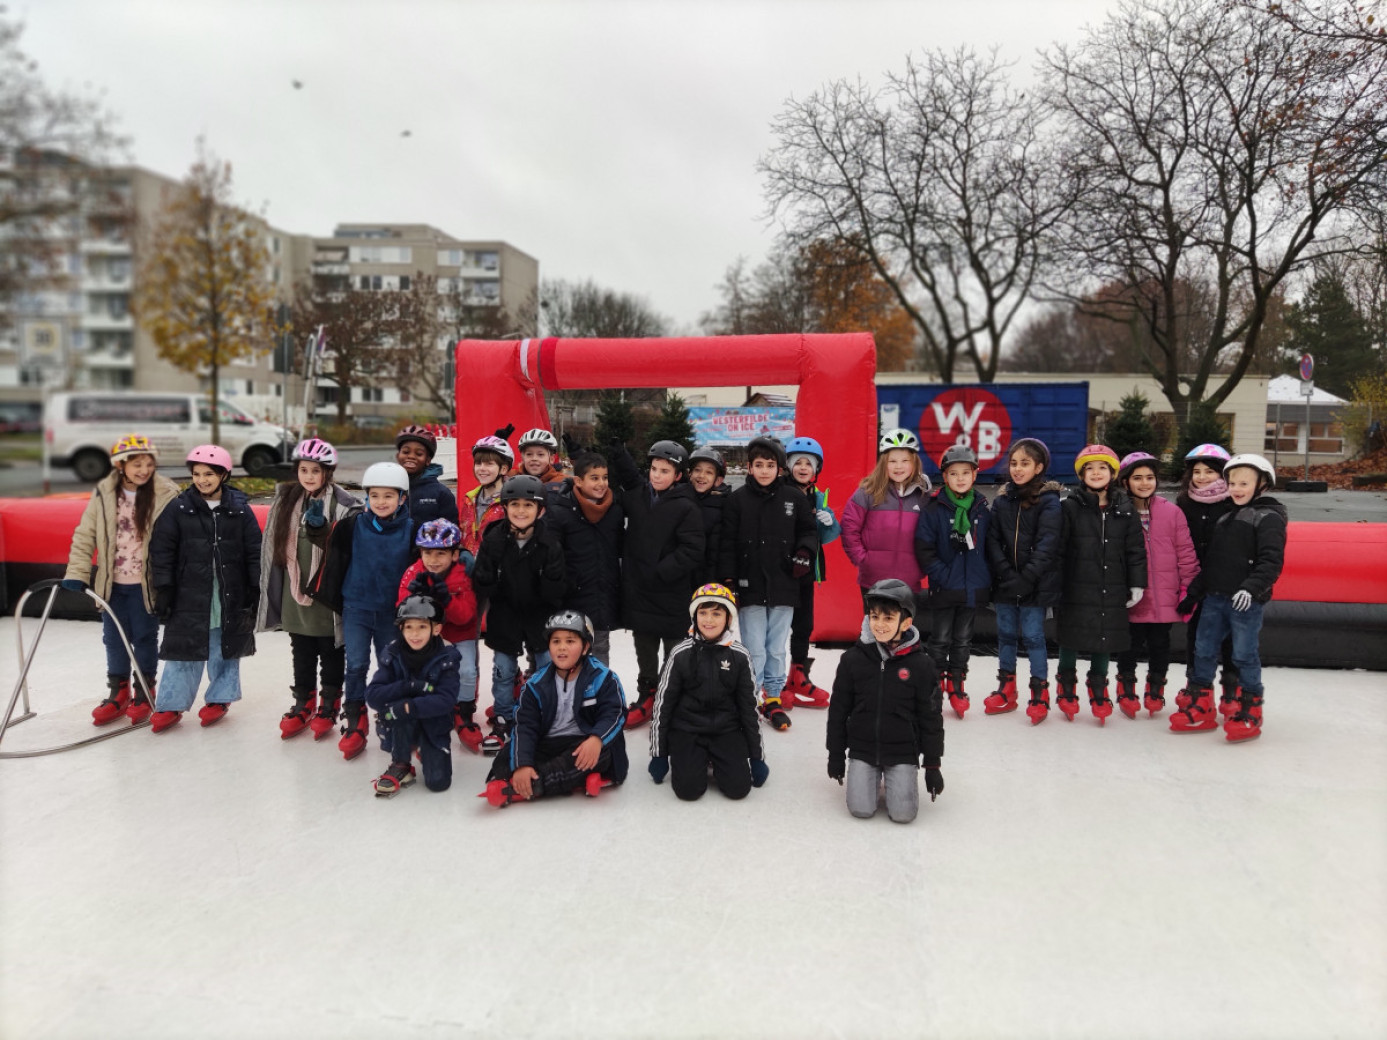 Die Klasse 3b der Westhausen Grundschule bei Westerfilde on Ice in Dortmund Westerfilde & Bodelschwingh